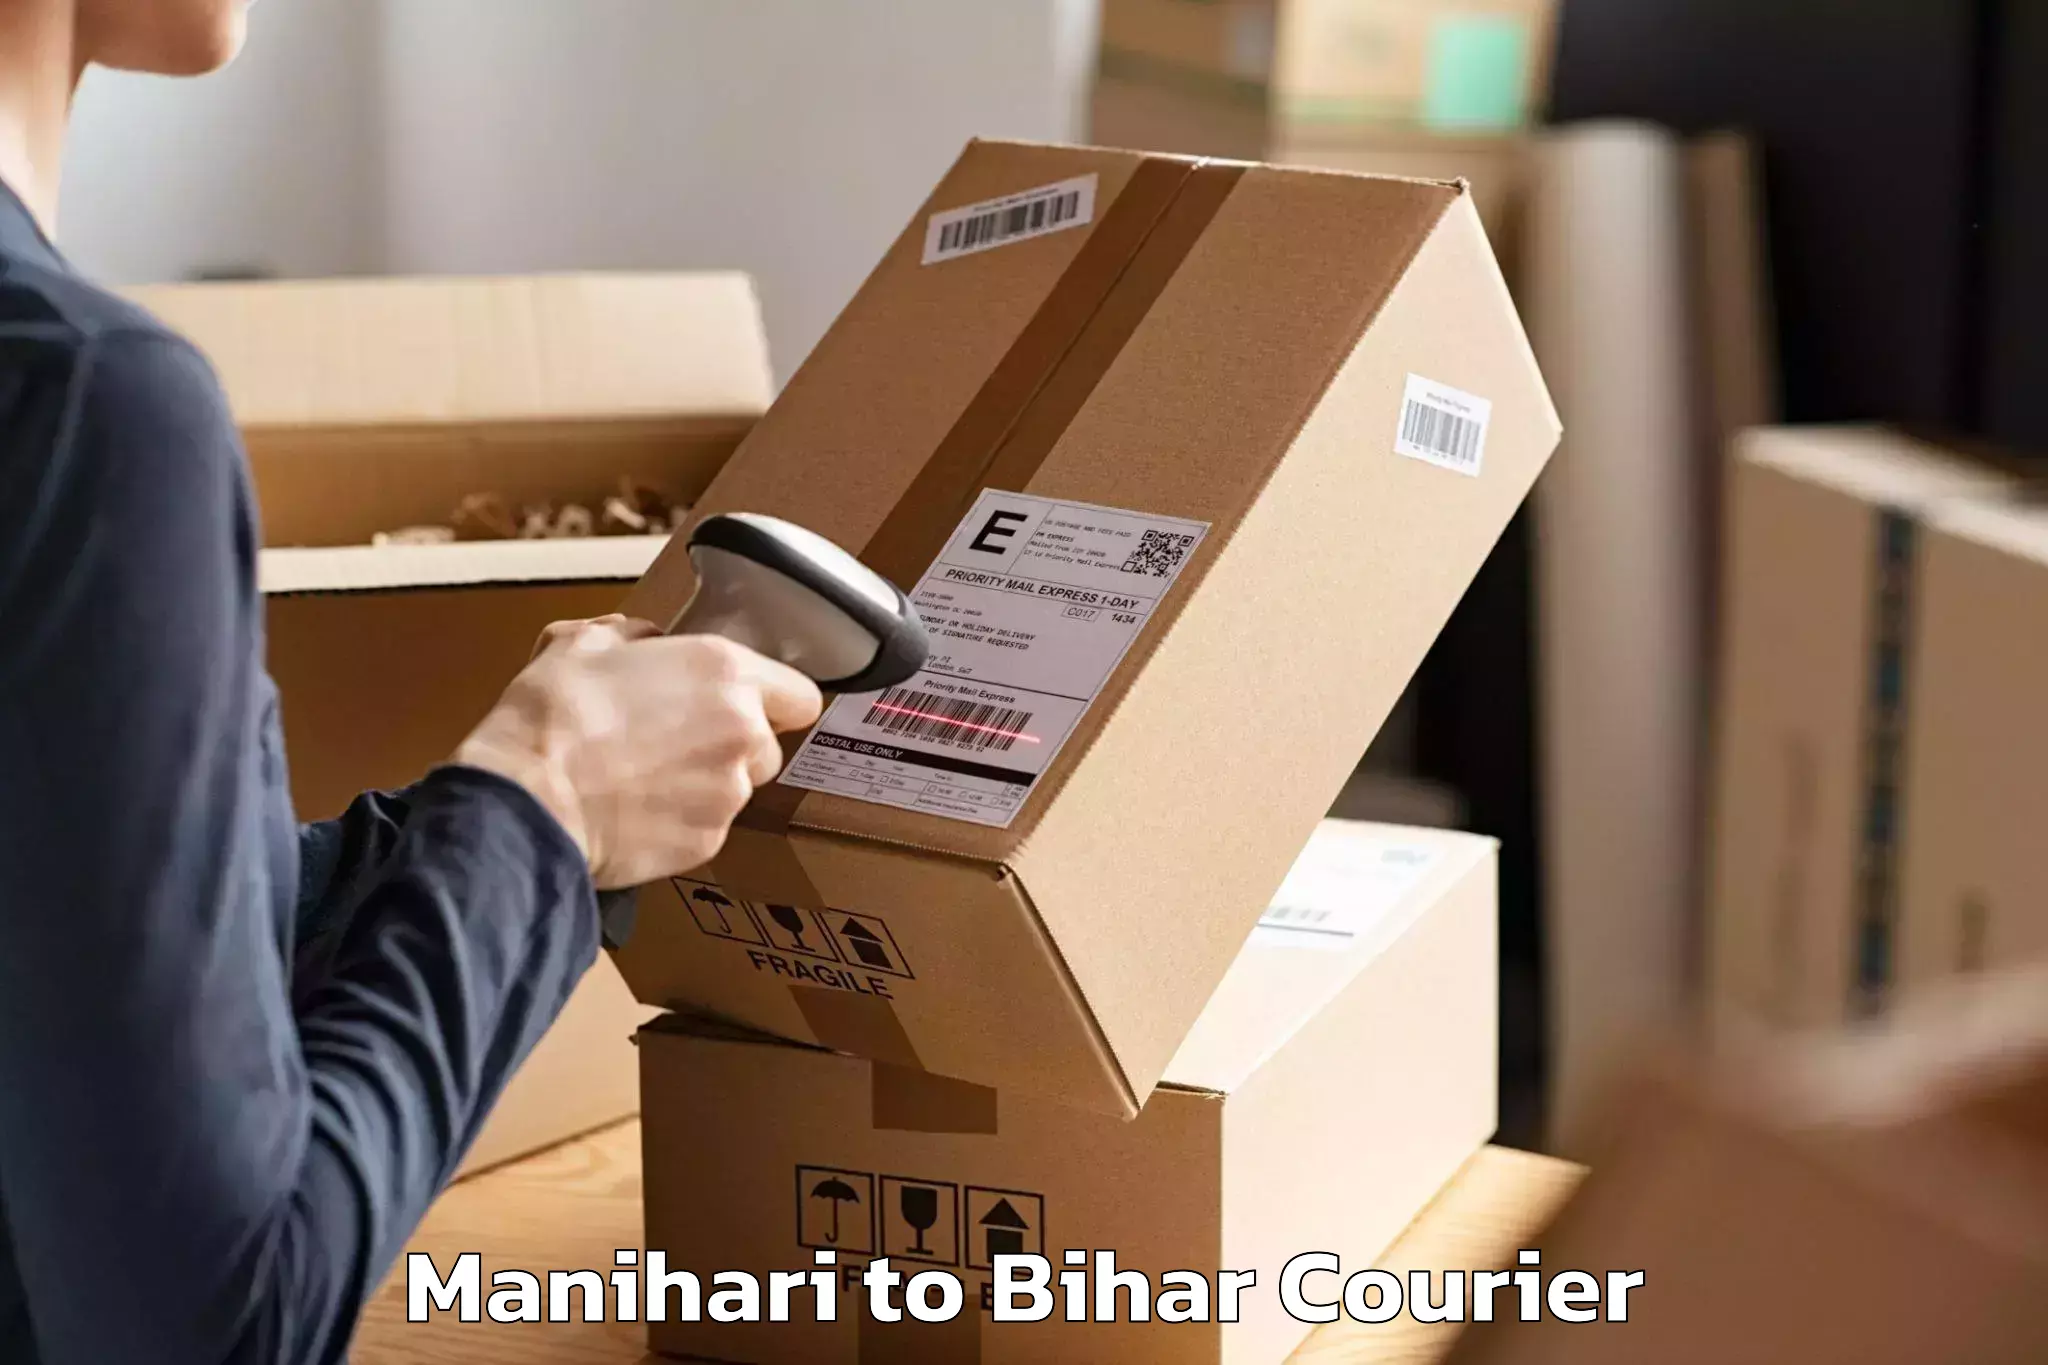 Moving and packing experts Manihari to Bihta